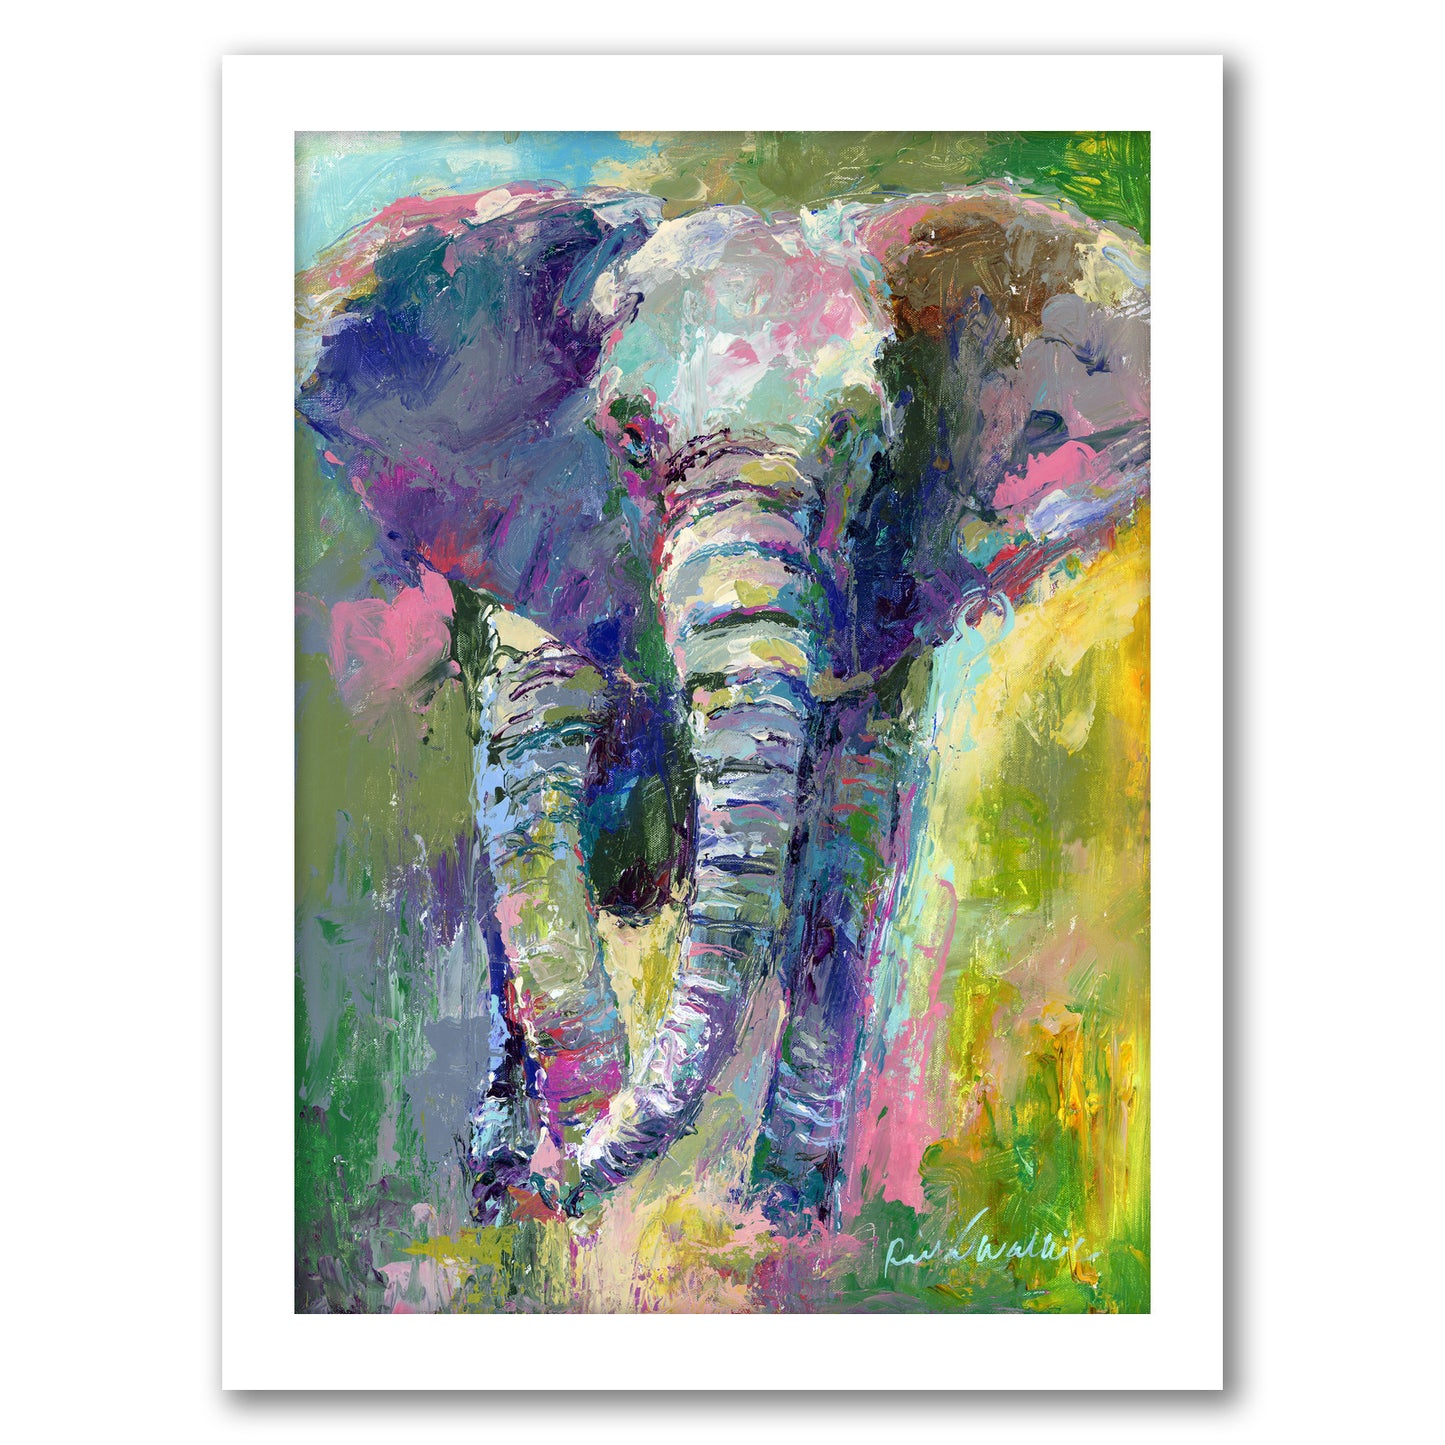 Elephant1 by Richard Wallich - Framed Print